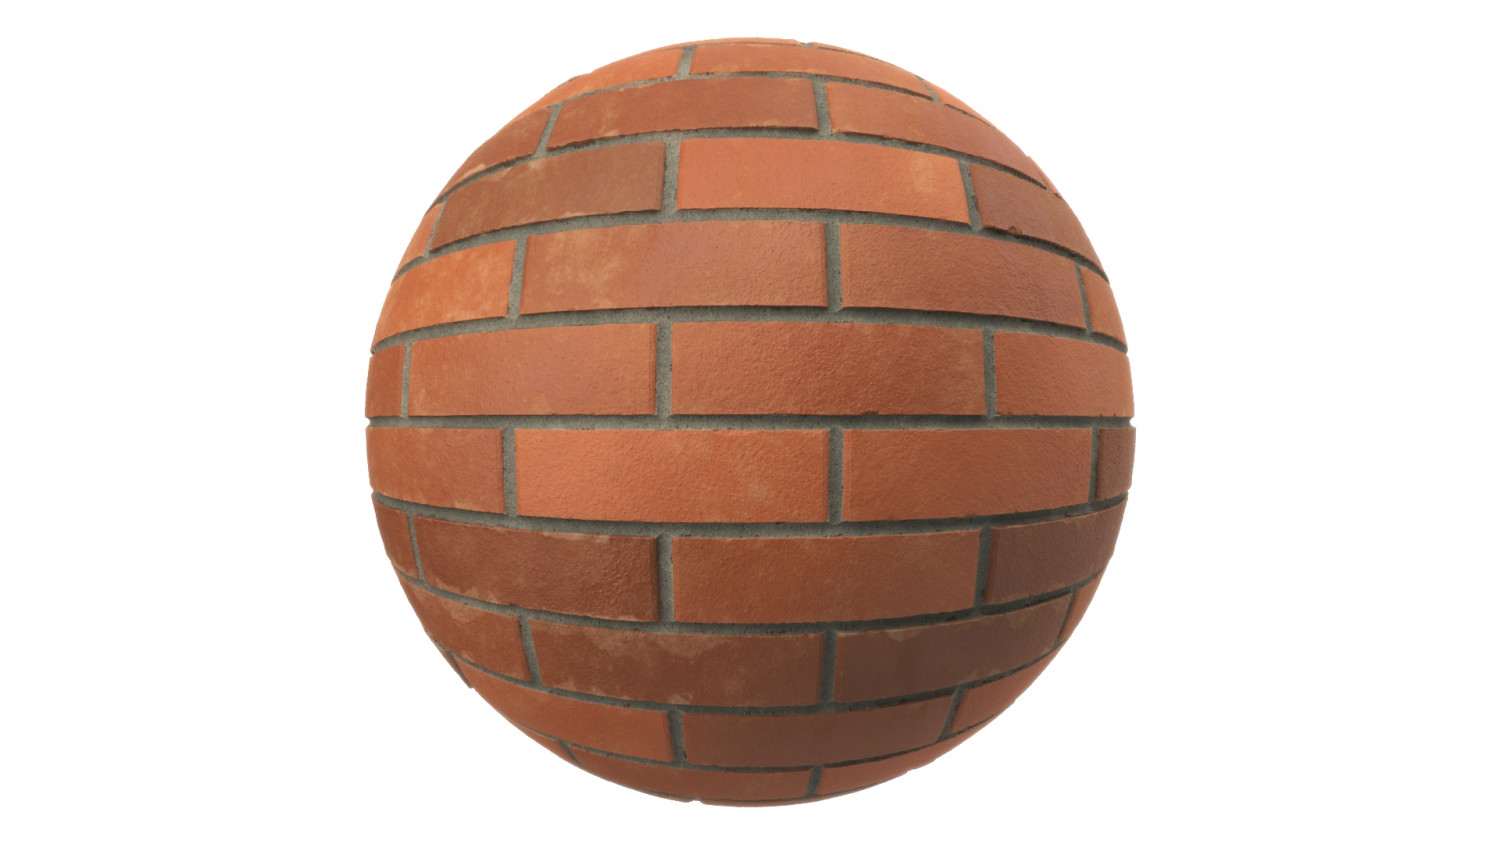 New orange brick texture